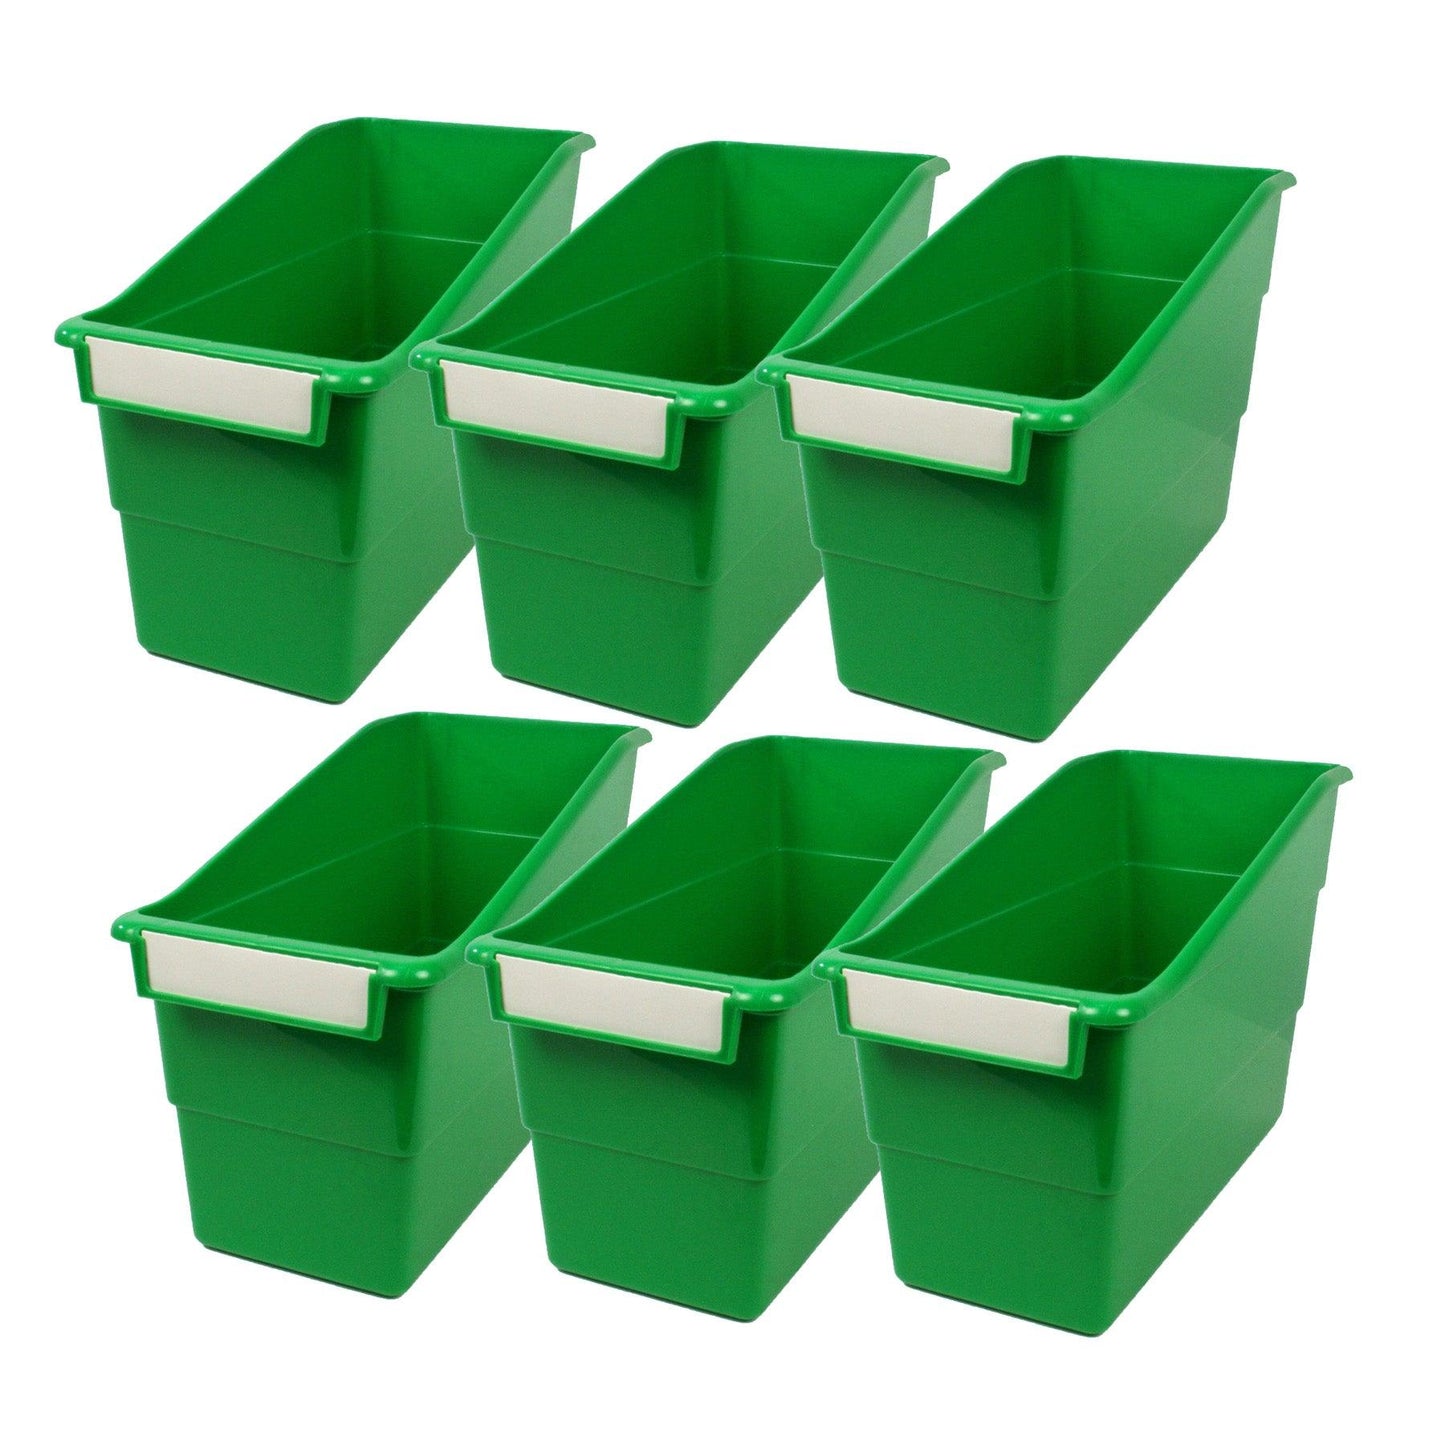 Tattle® Shelf File, Green, Pack of 6 - Loomini